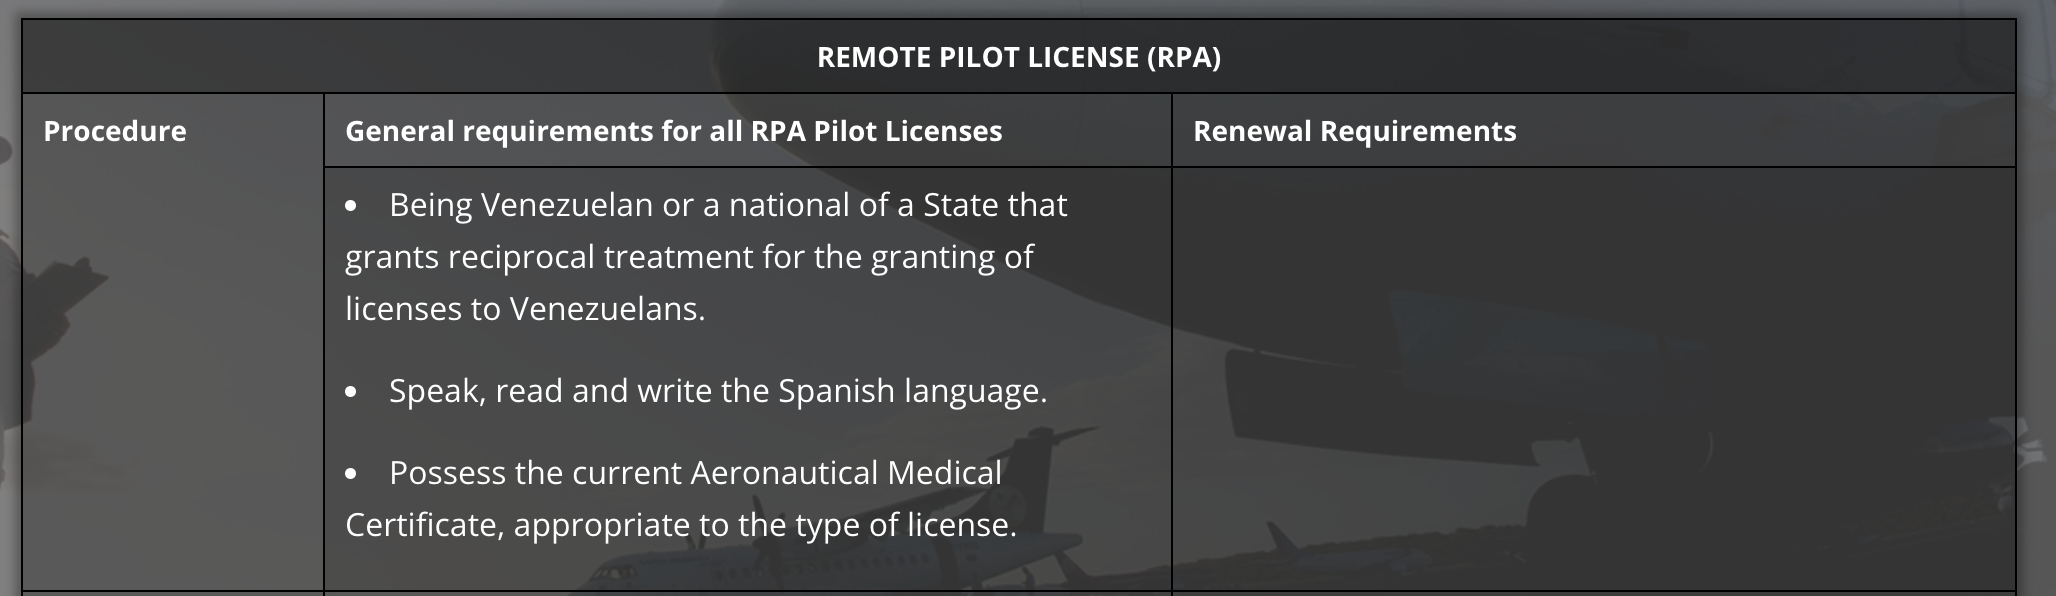 Remote Pilot License